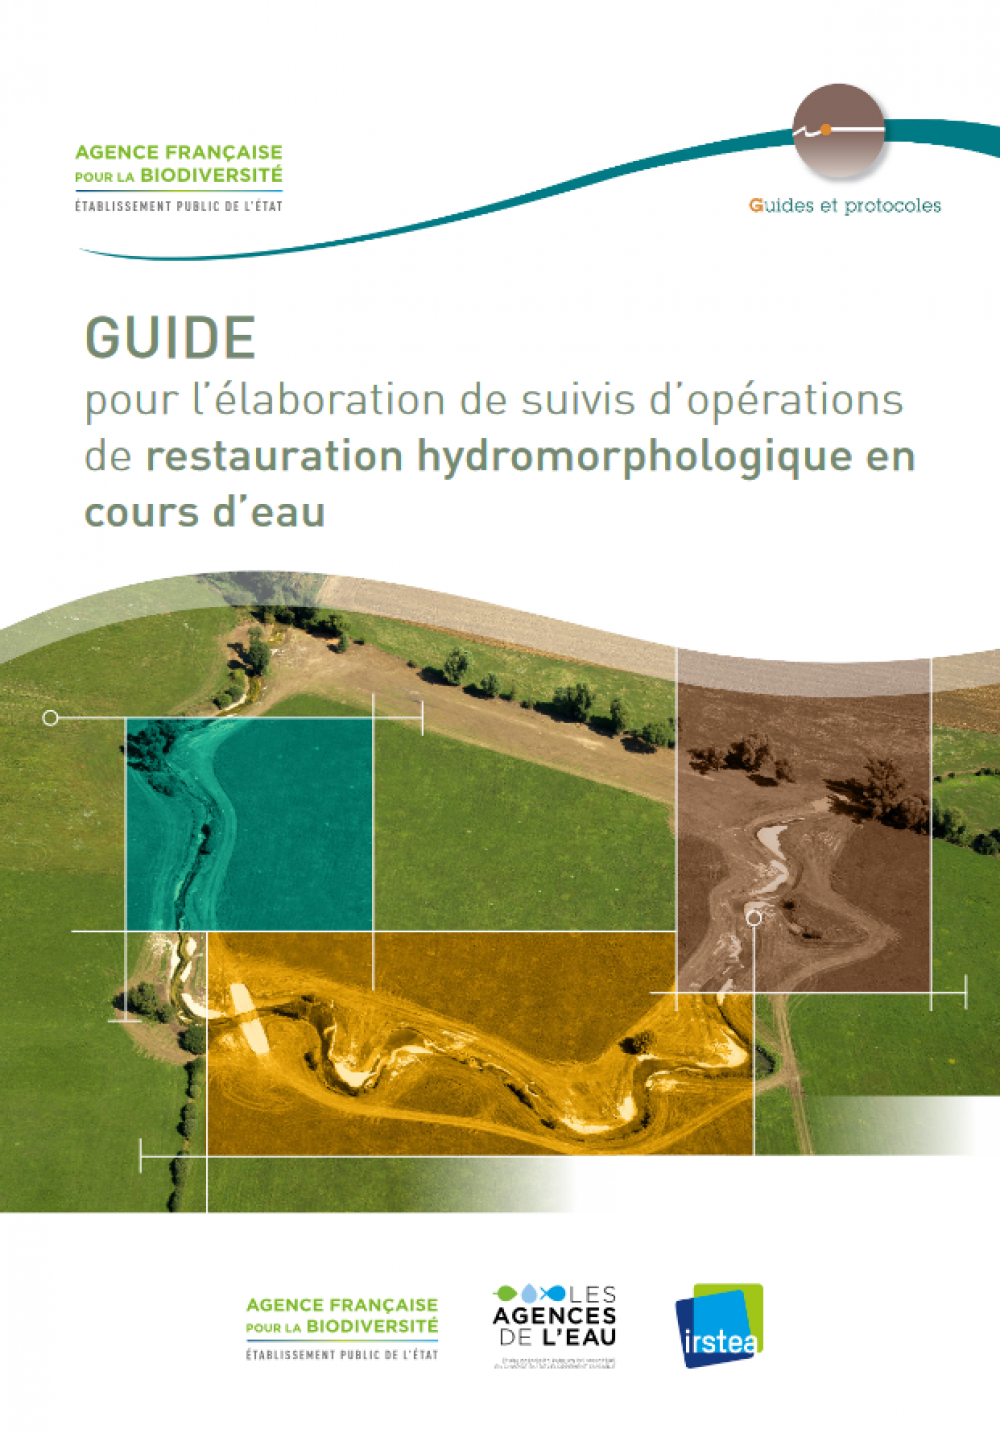 Guide pour l'élaboration de suivis d'opérations de restauration hydromorphologique en cours d'eau